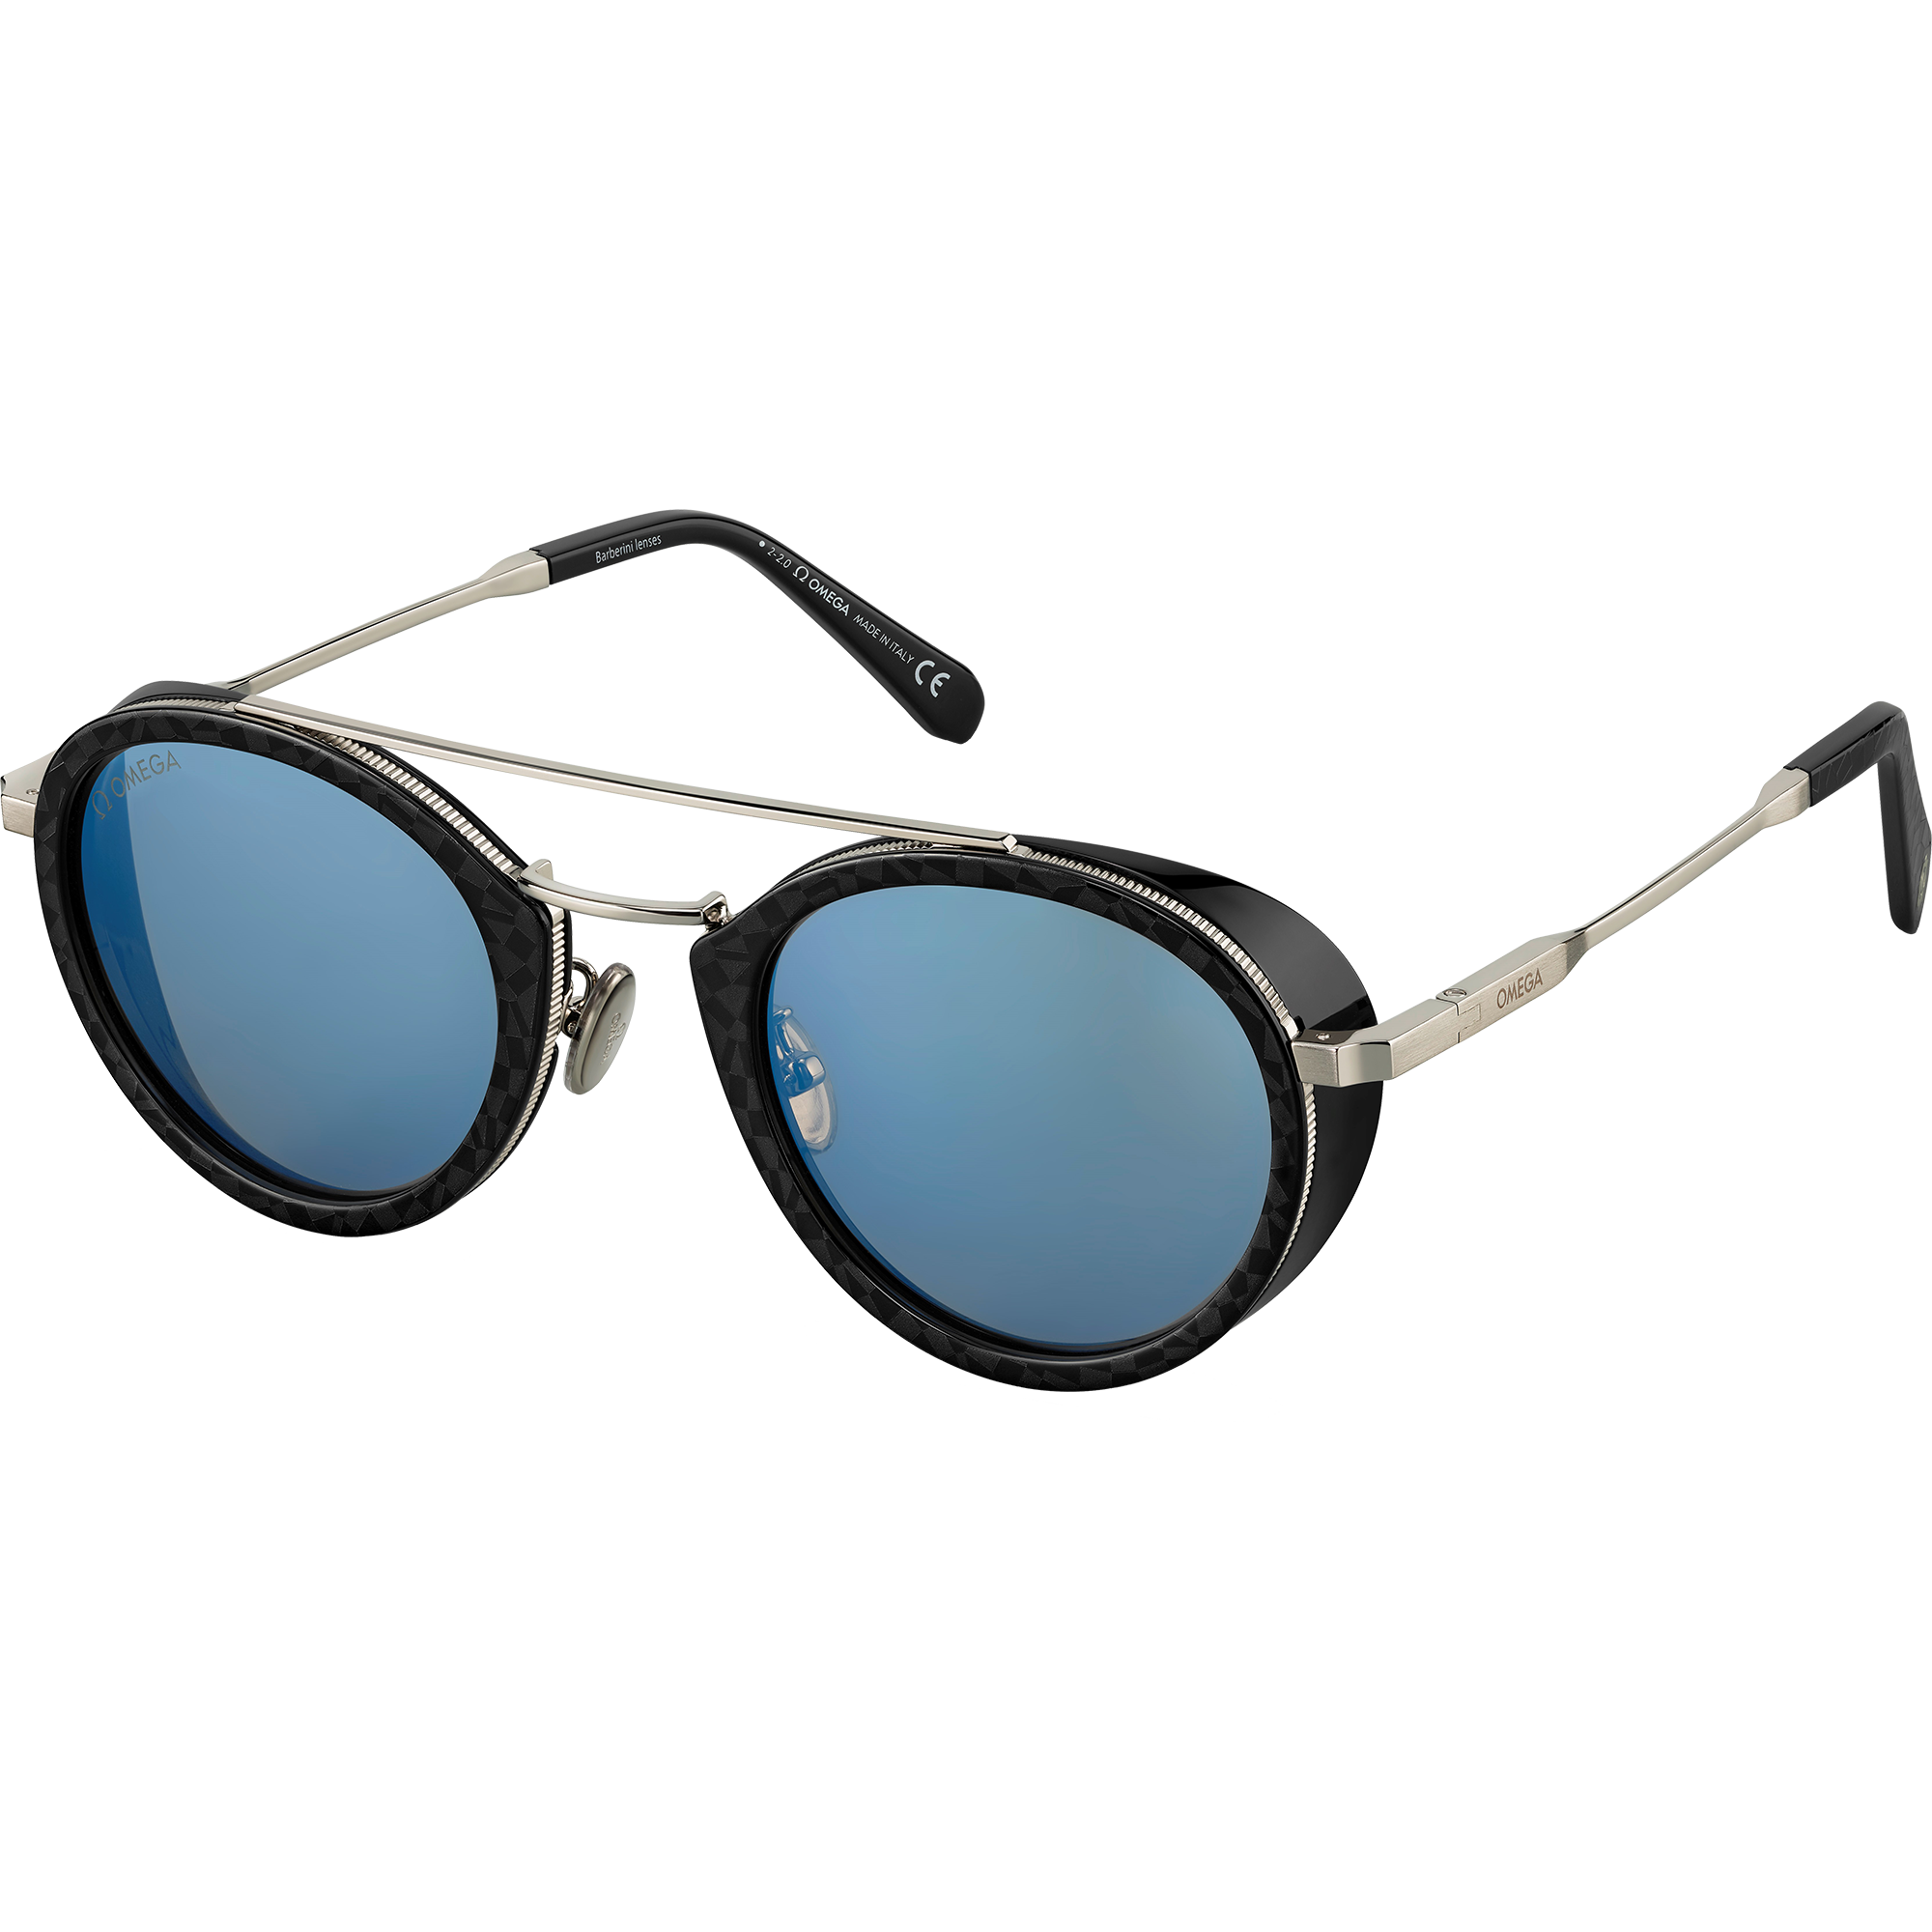 Óculos de Sol - Estilo redondo, Unissexo - OM0021-H5205X